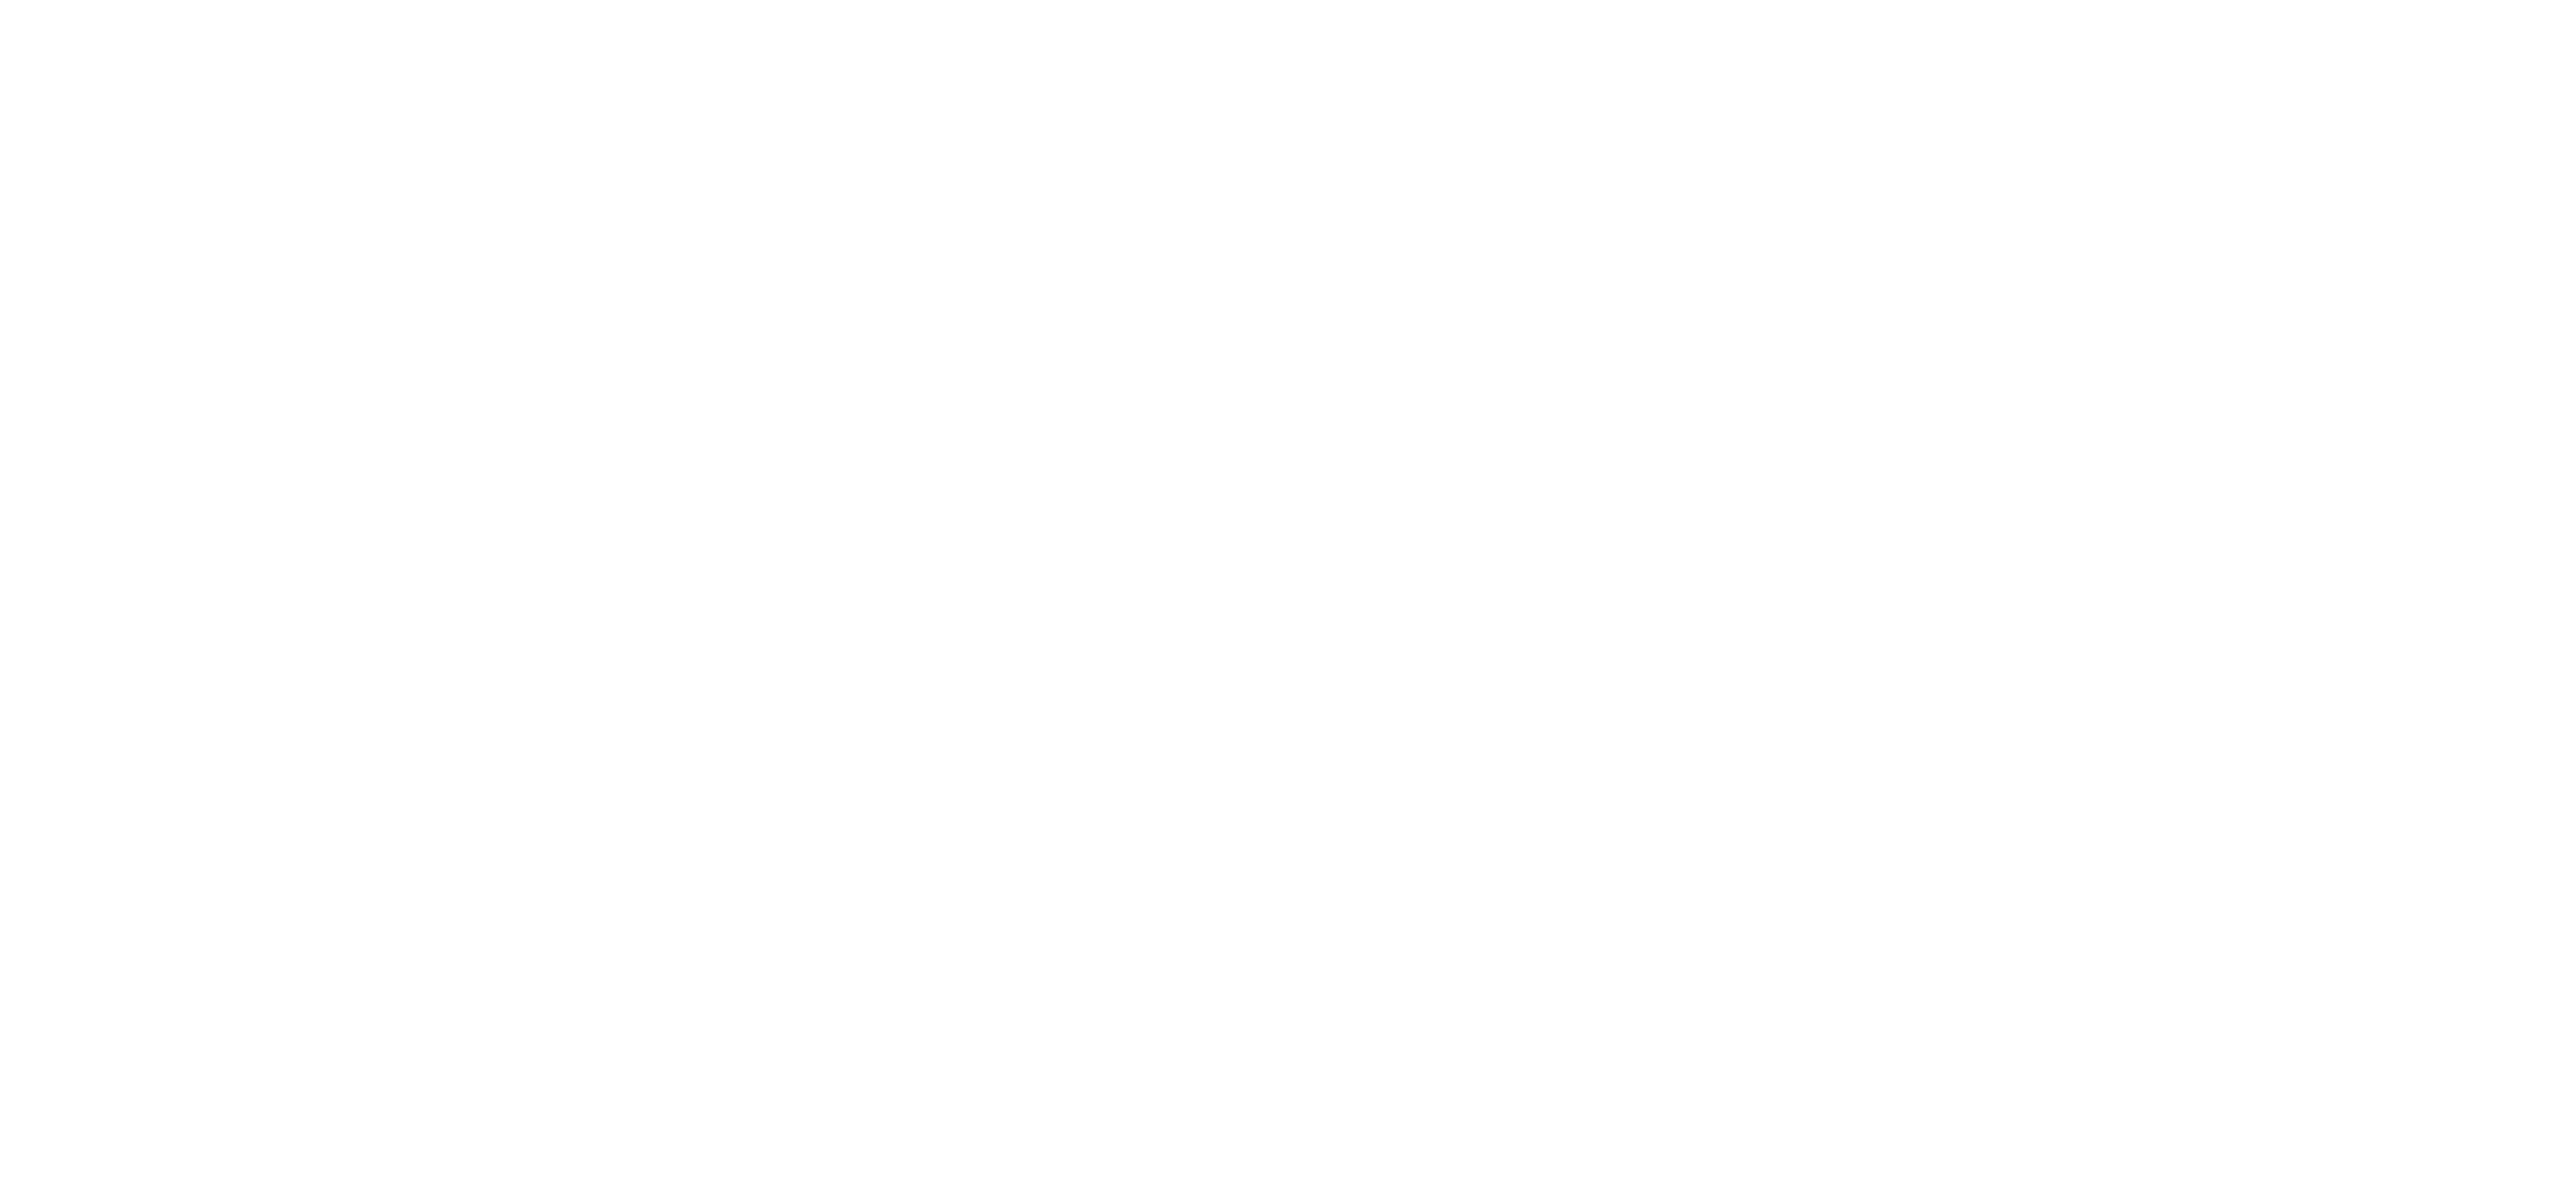 Global geoparks network - EGN